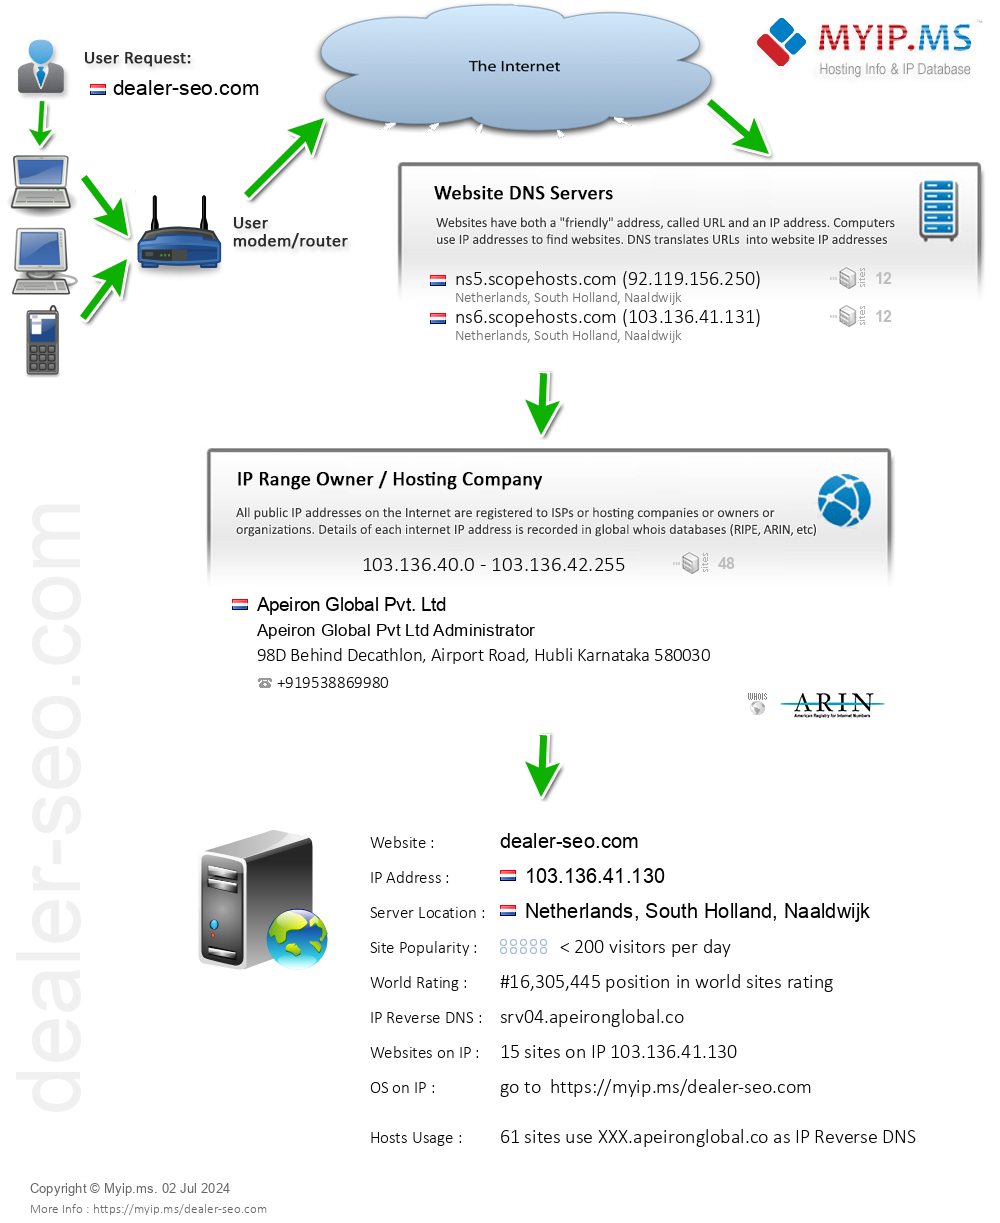 Dealer-seo.com - Website Hosting Visual IP Diagram